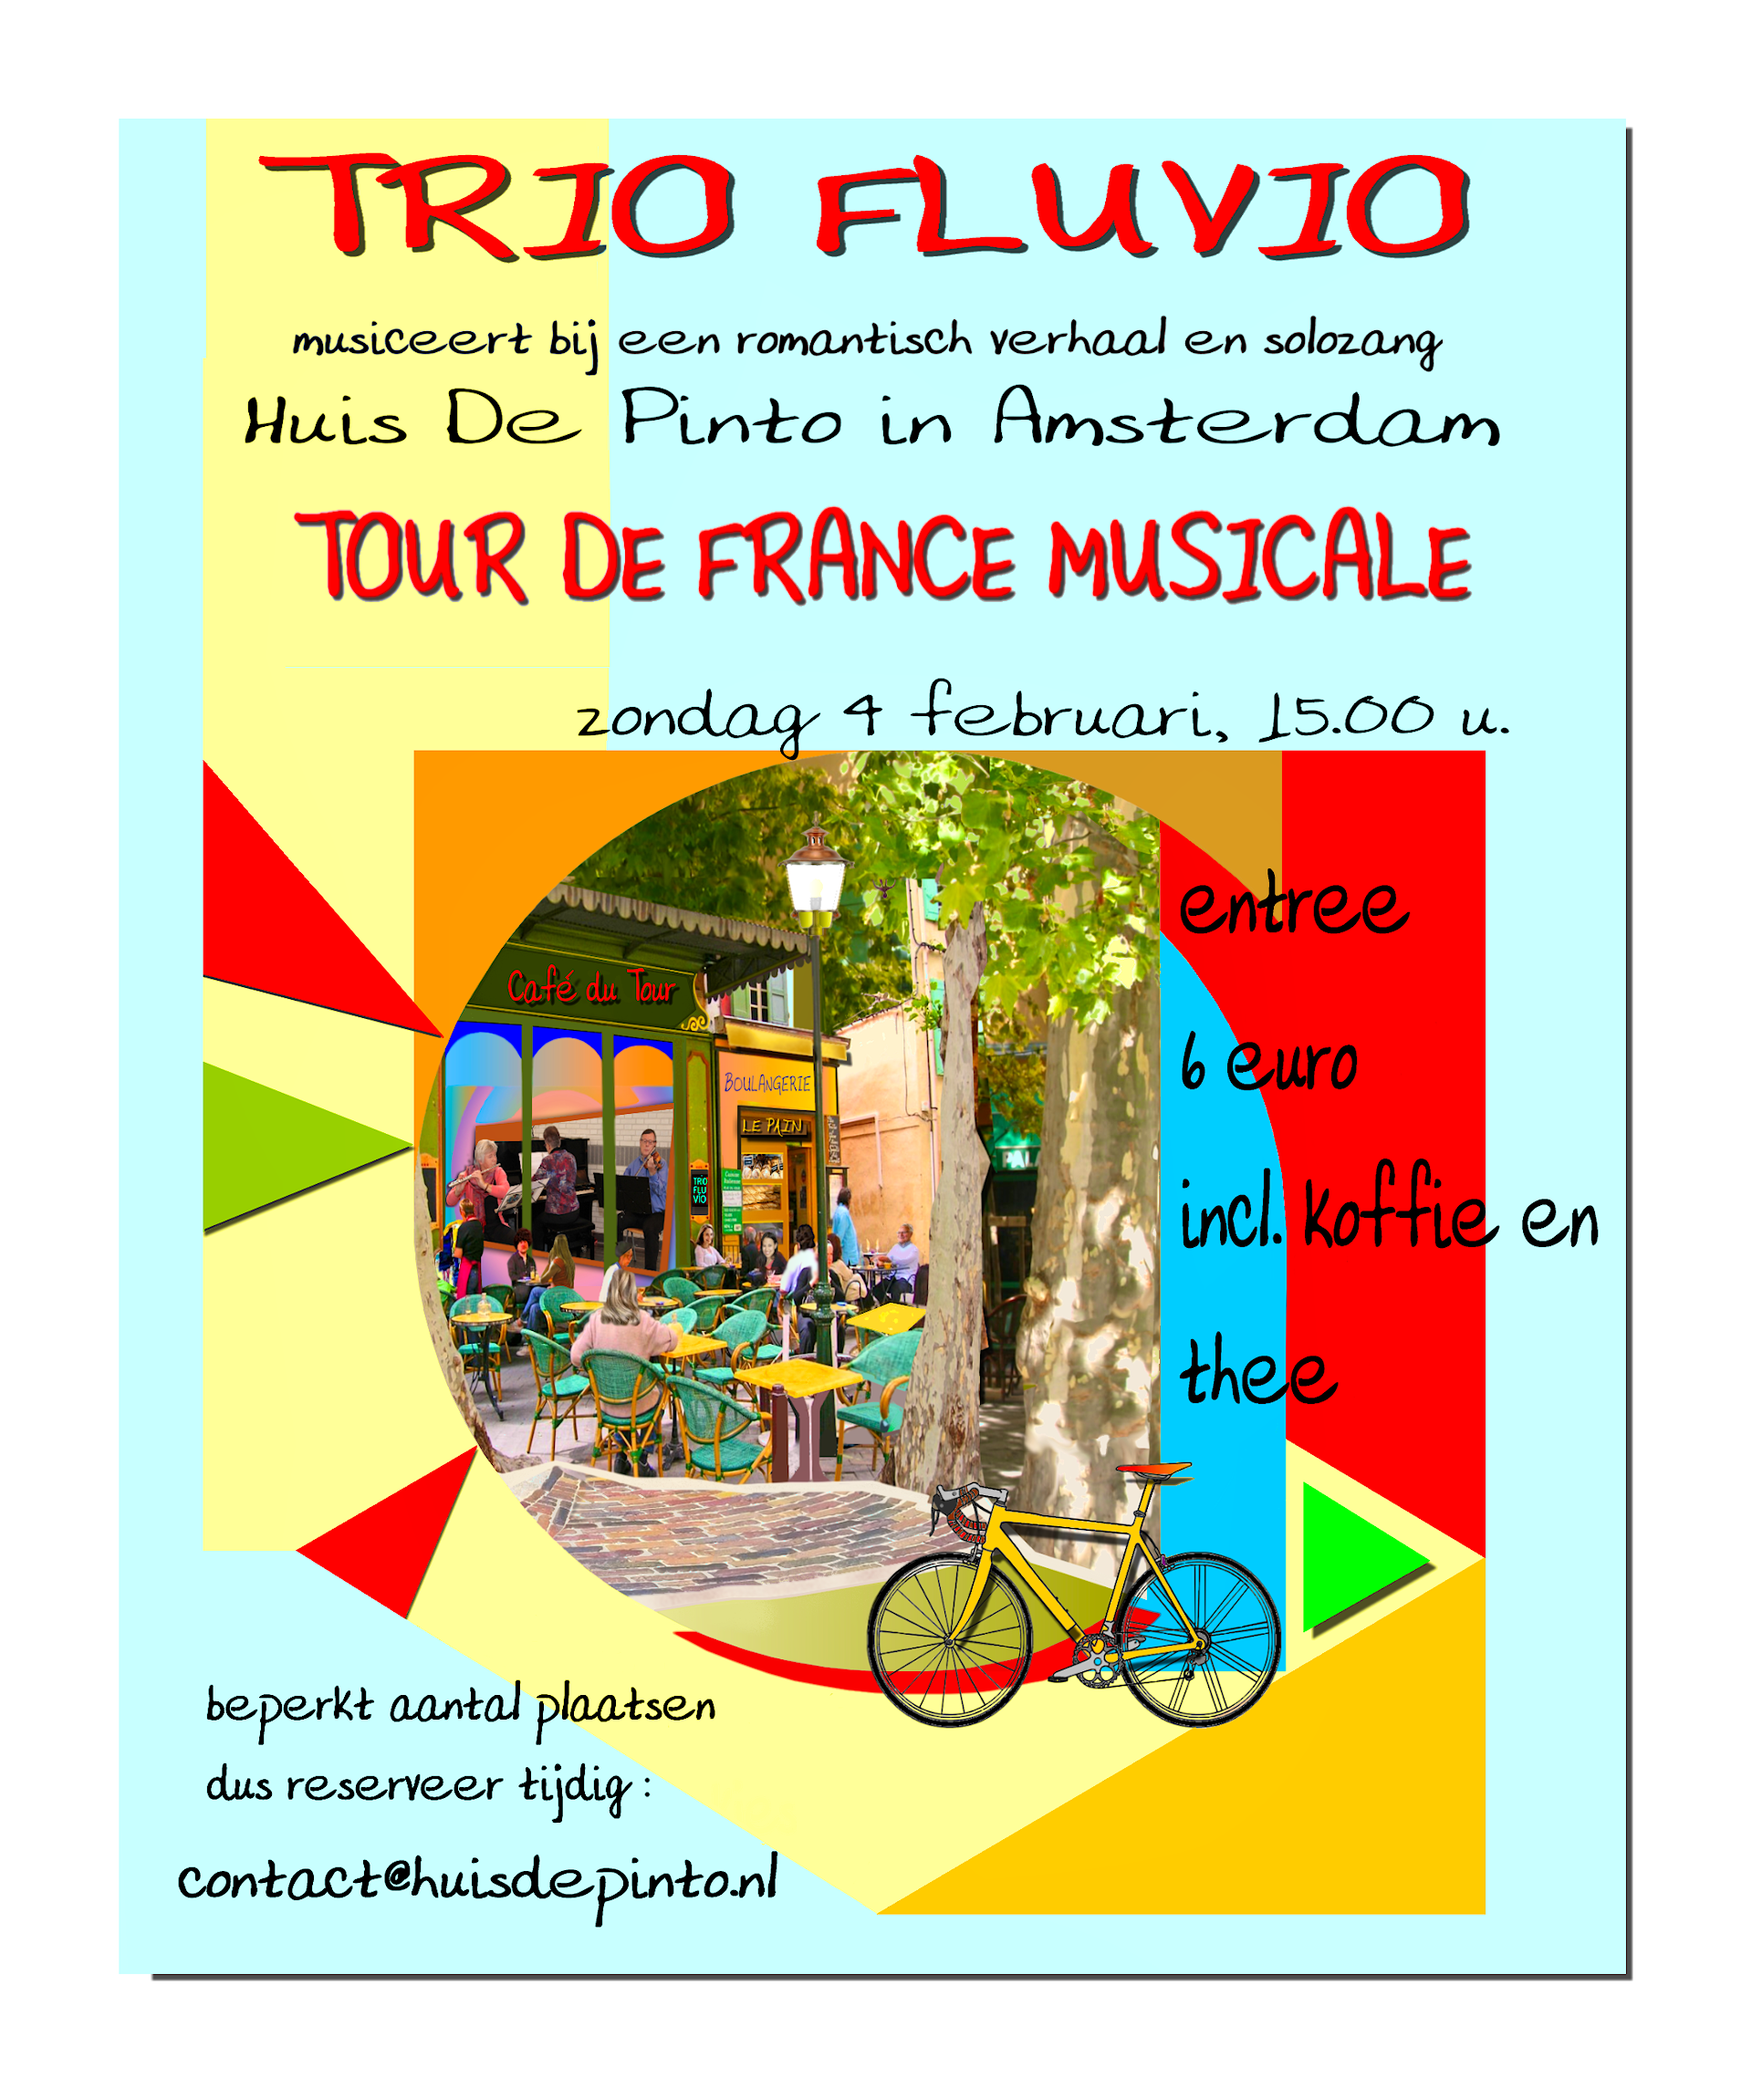 Trio Fluvio's Tour de France Musicale